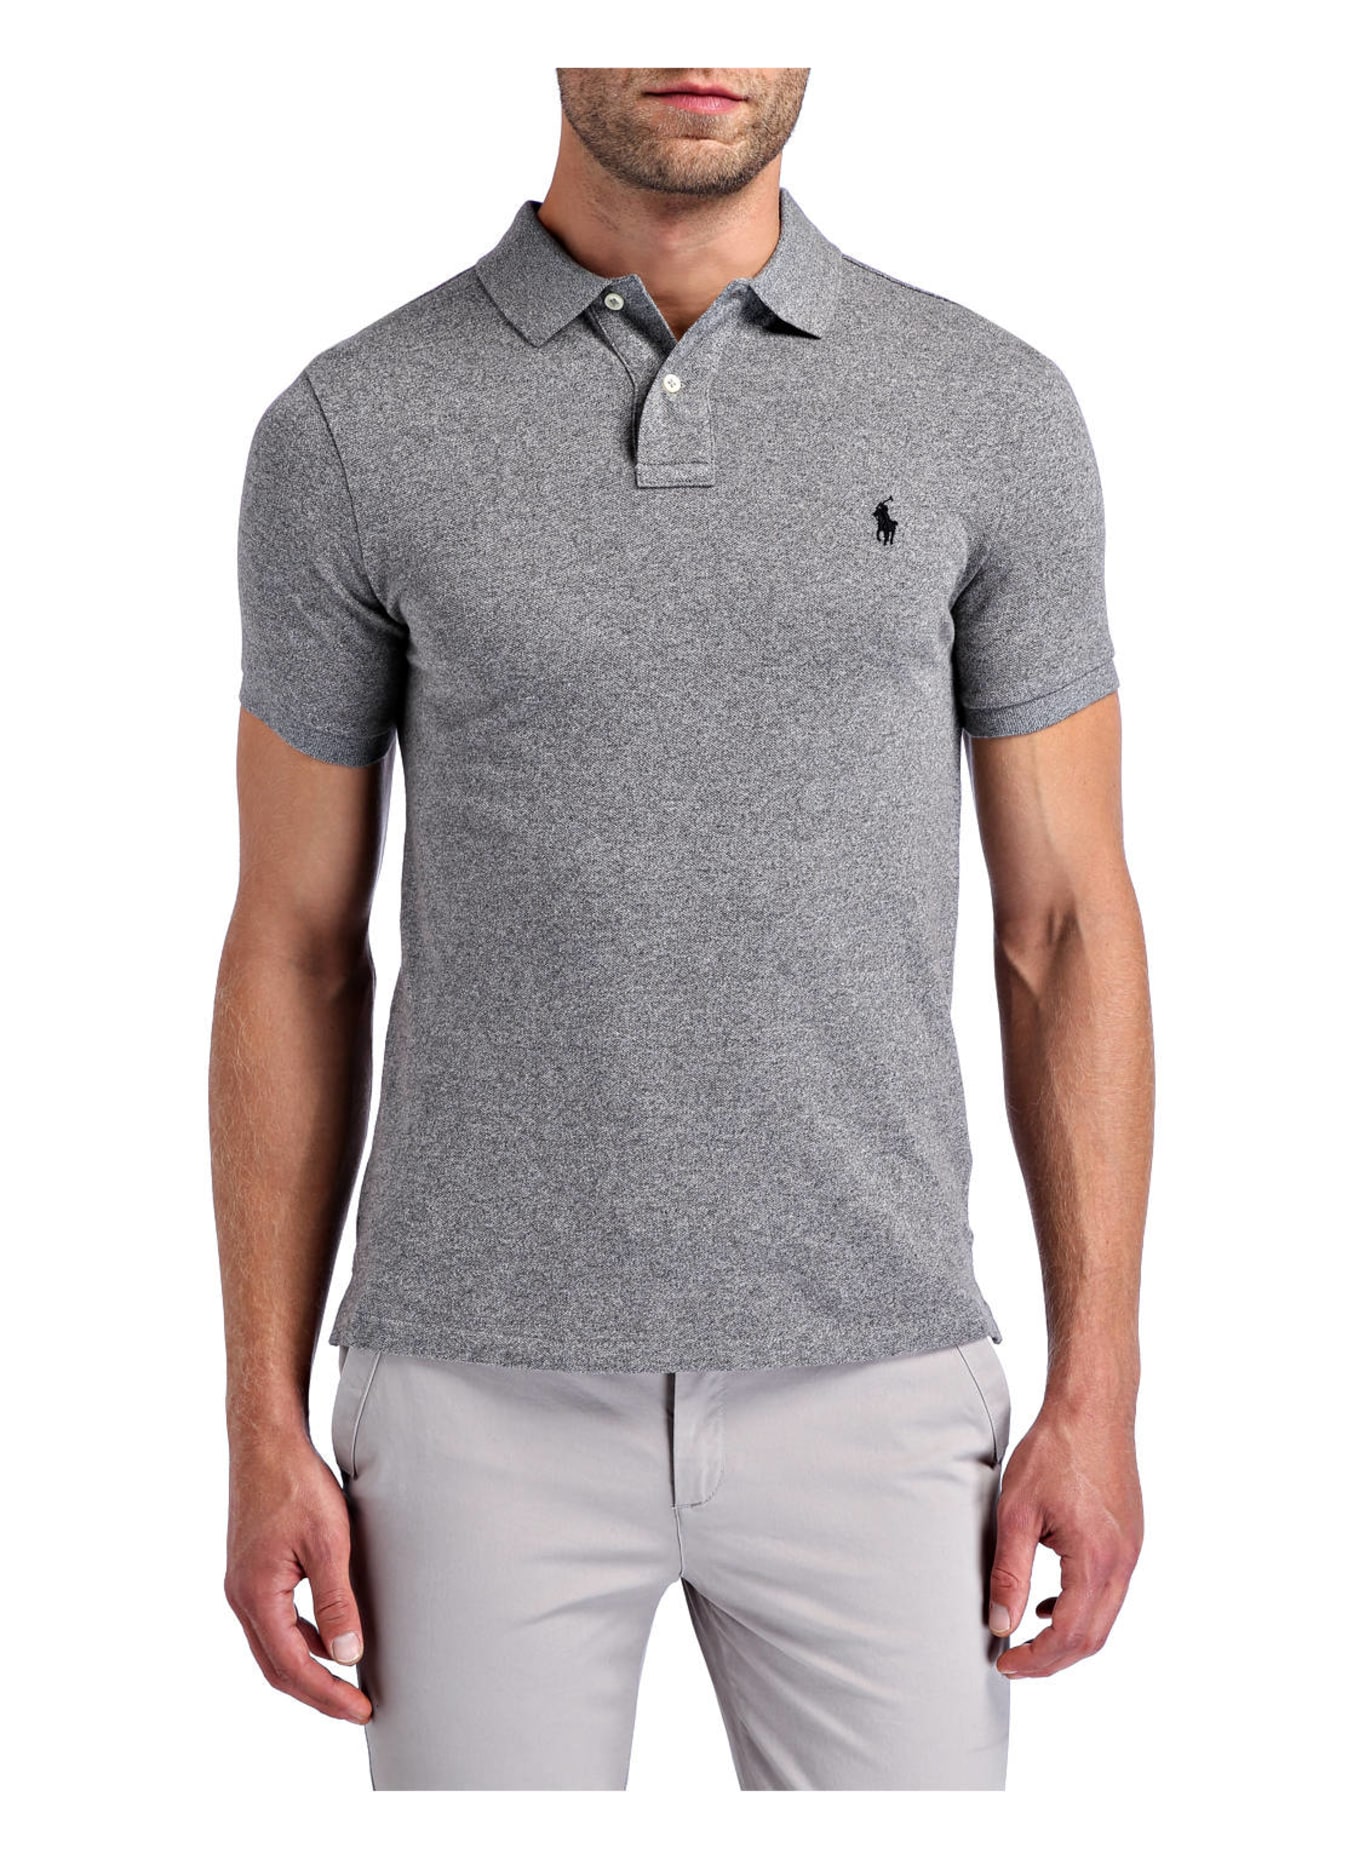 POLO RALPH LAUREN Piqué-Poloshirt Slim Fit, Farbe: GRAU MELIERT (Bild 2)